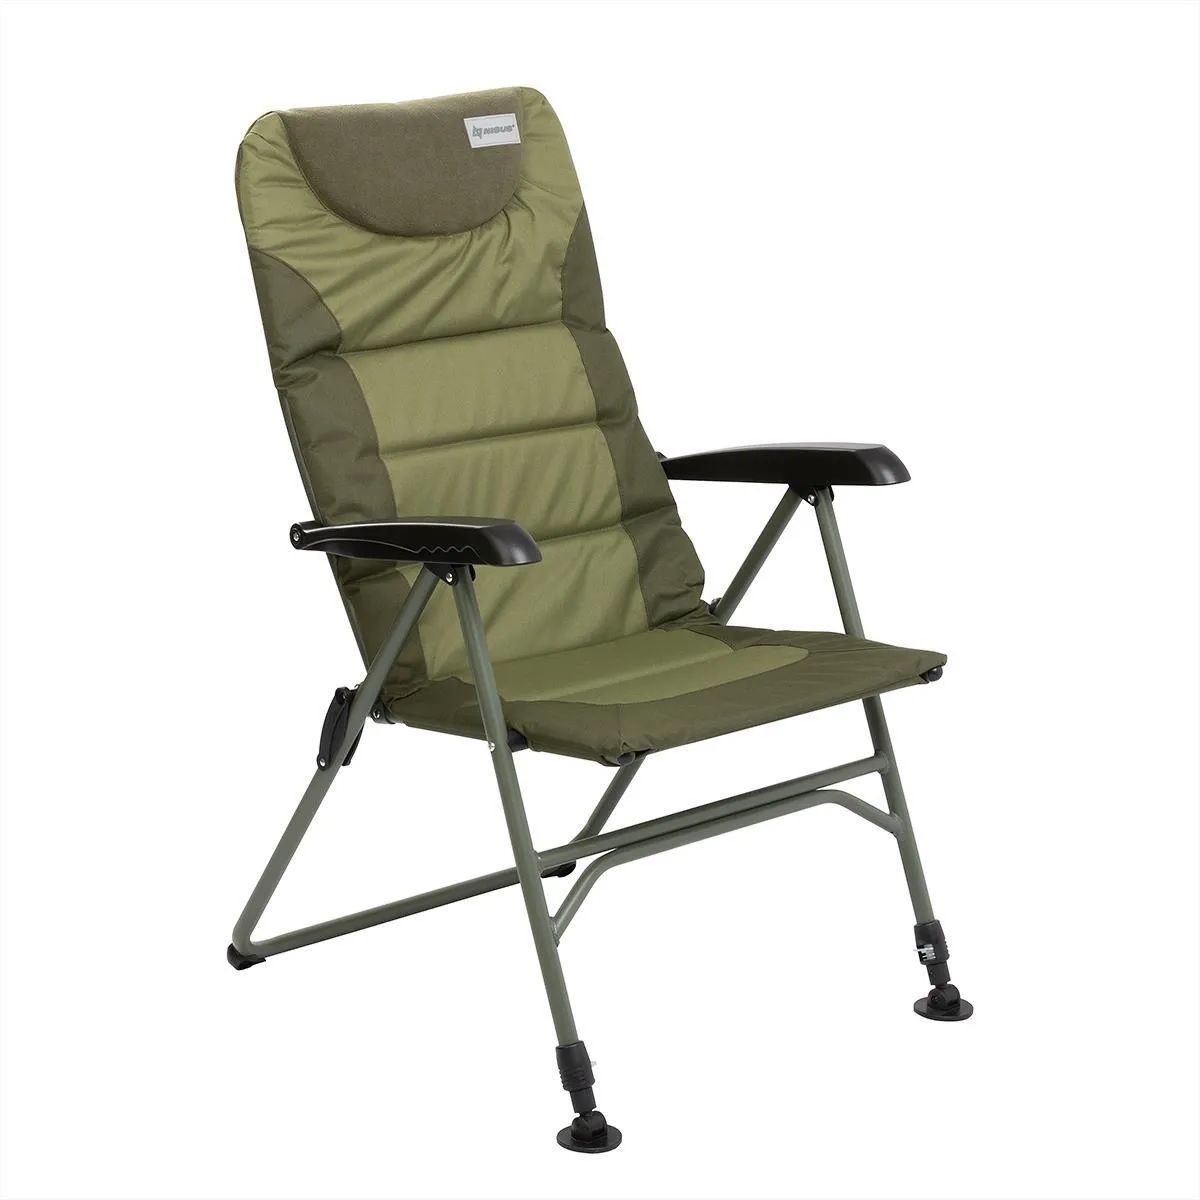  Кресло Carp Pro Feeder Chair BD620 - обзор, характеристики, отзывы 